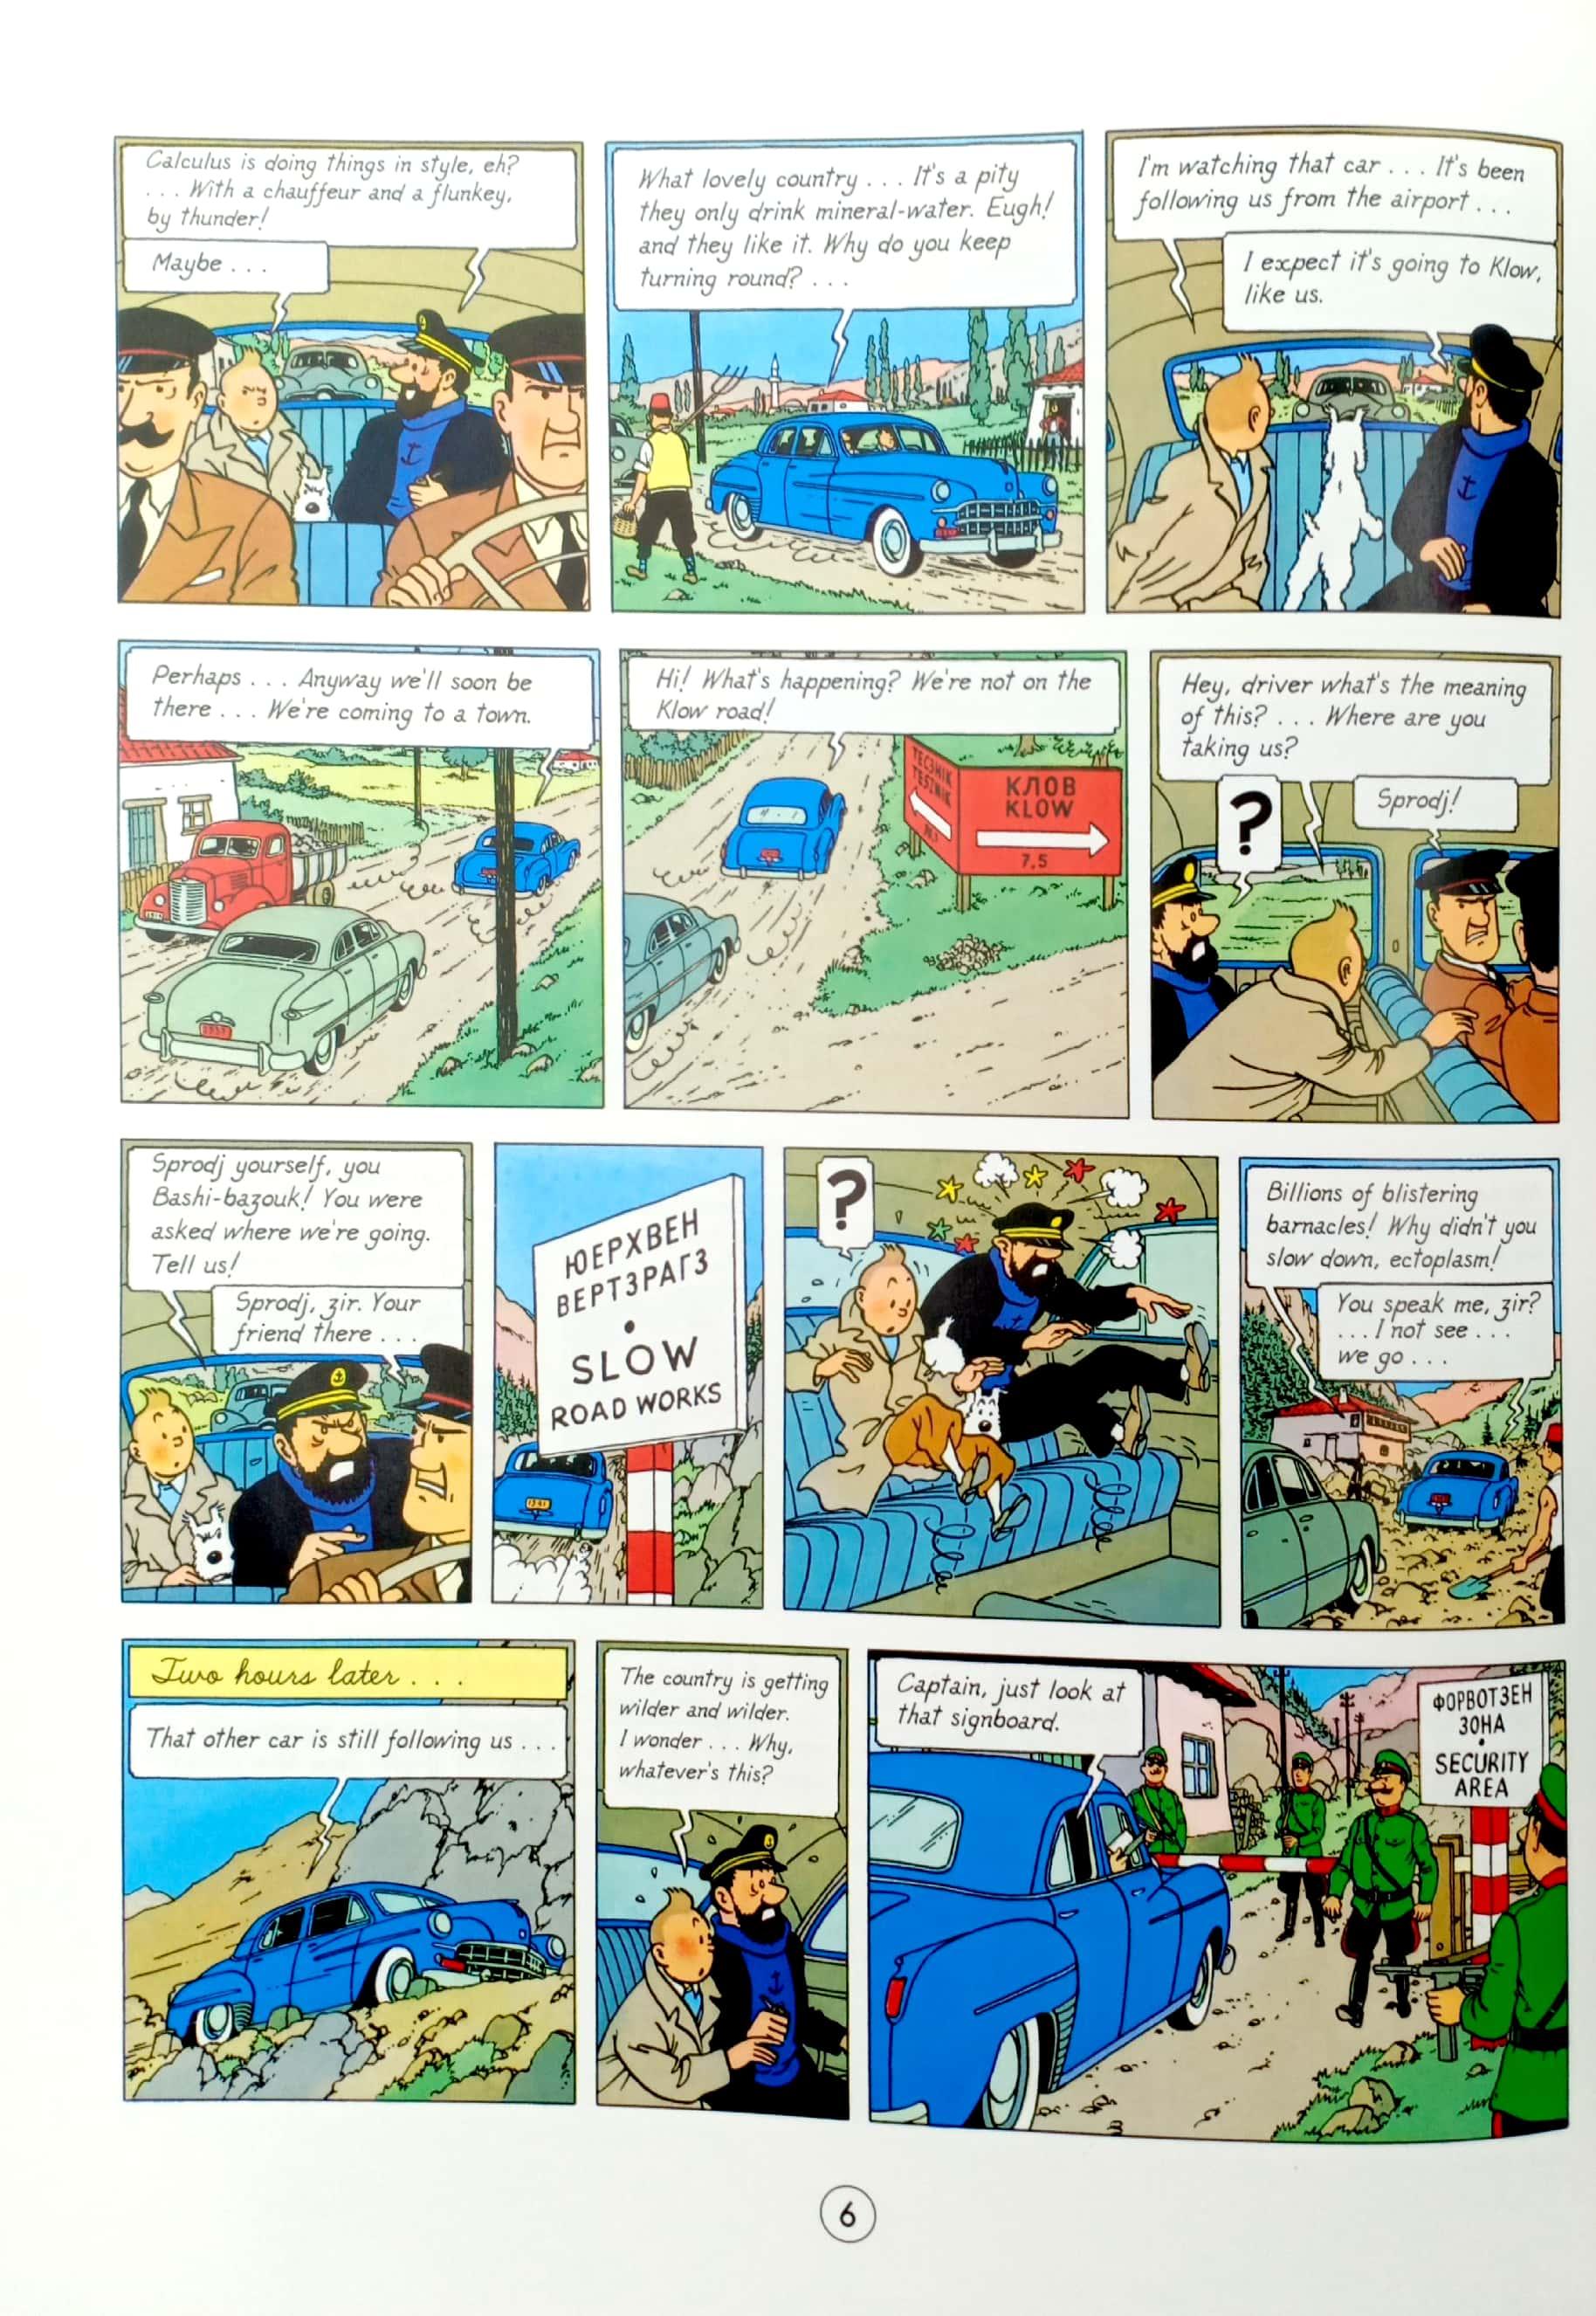 Tintin on the Moon: Destination Moon &amp; Explorers on the Moon (Adventures of Tintin)